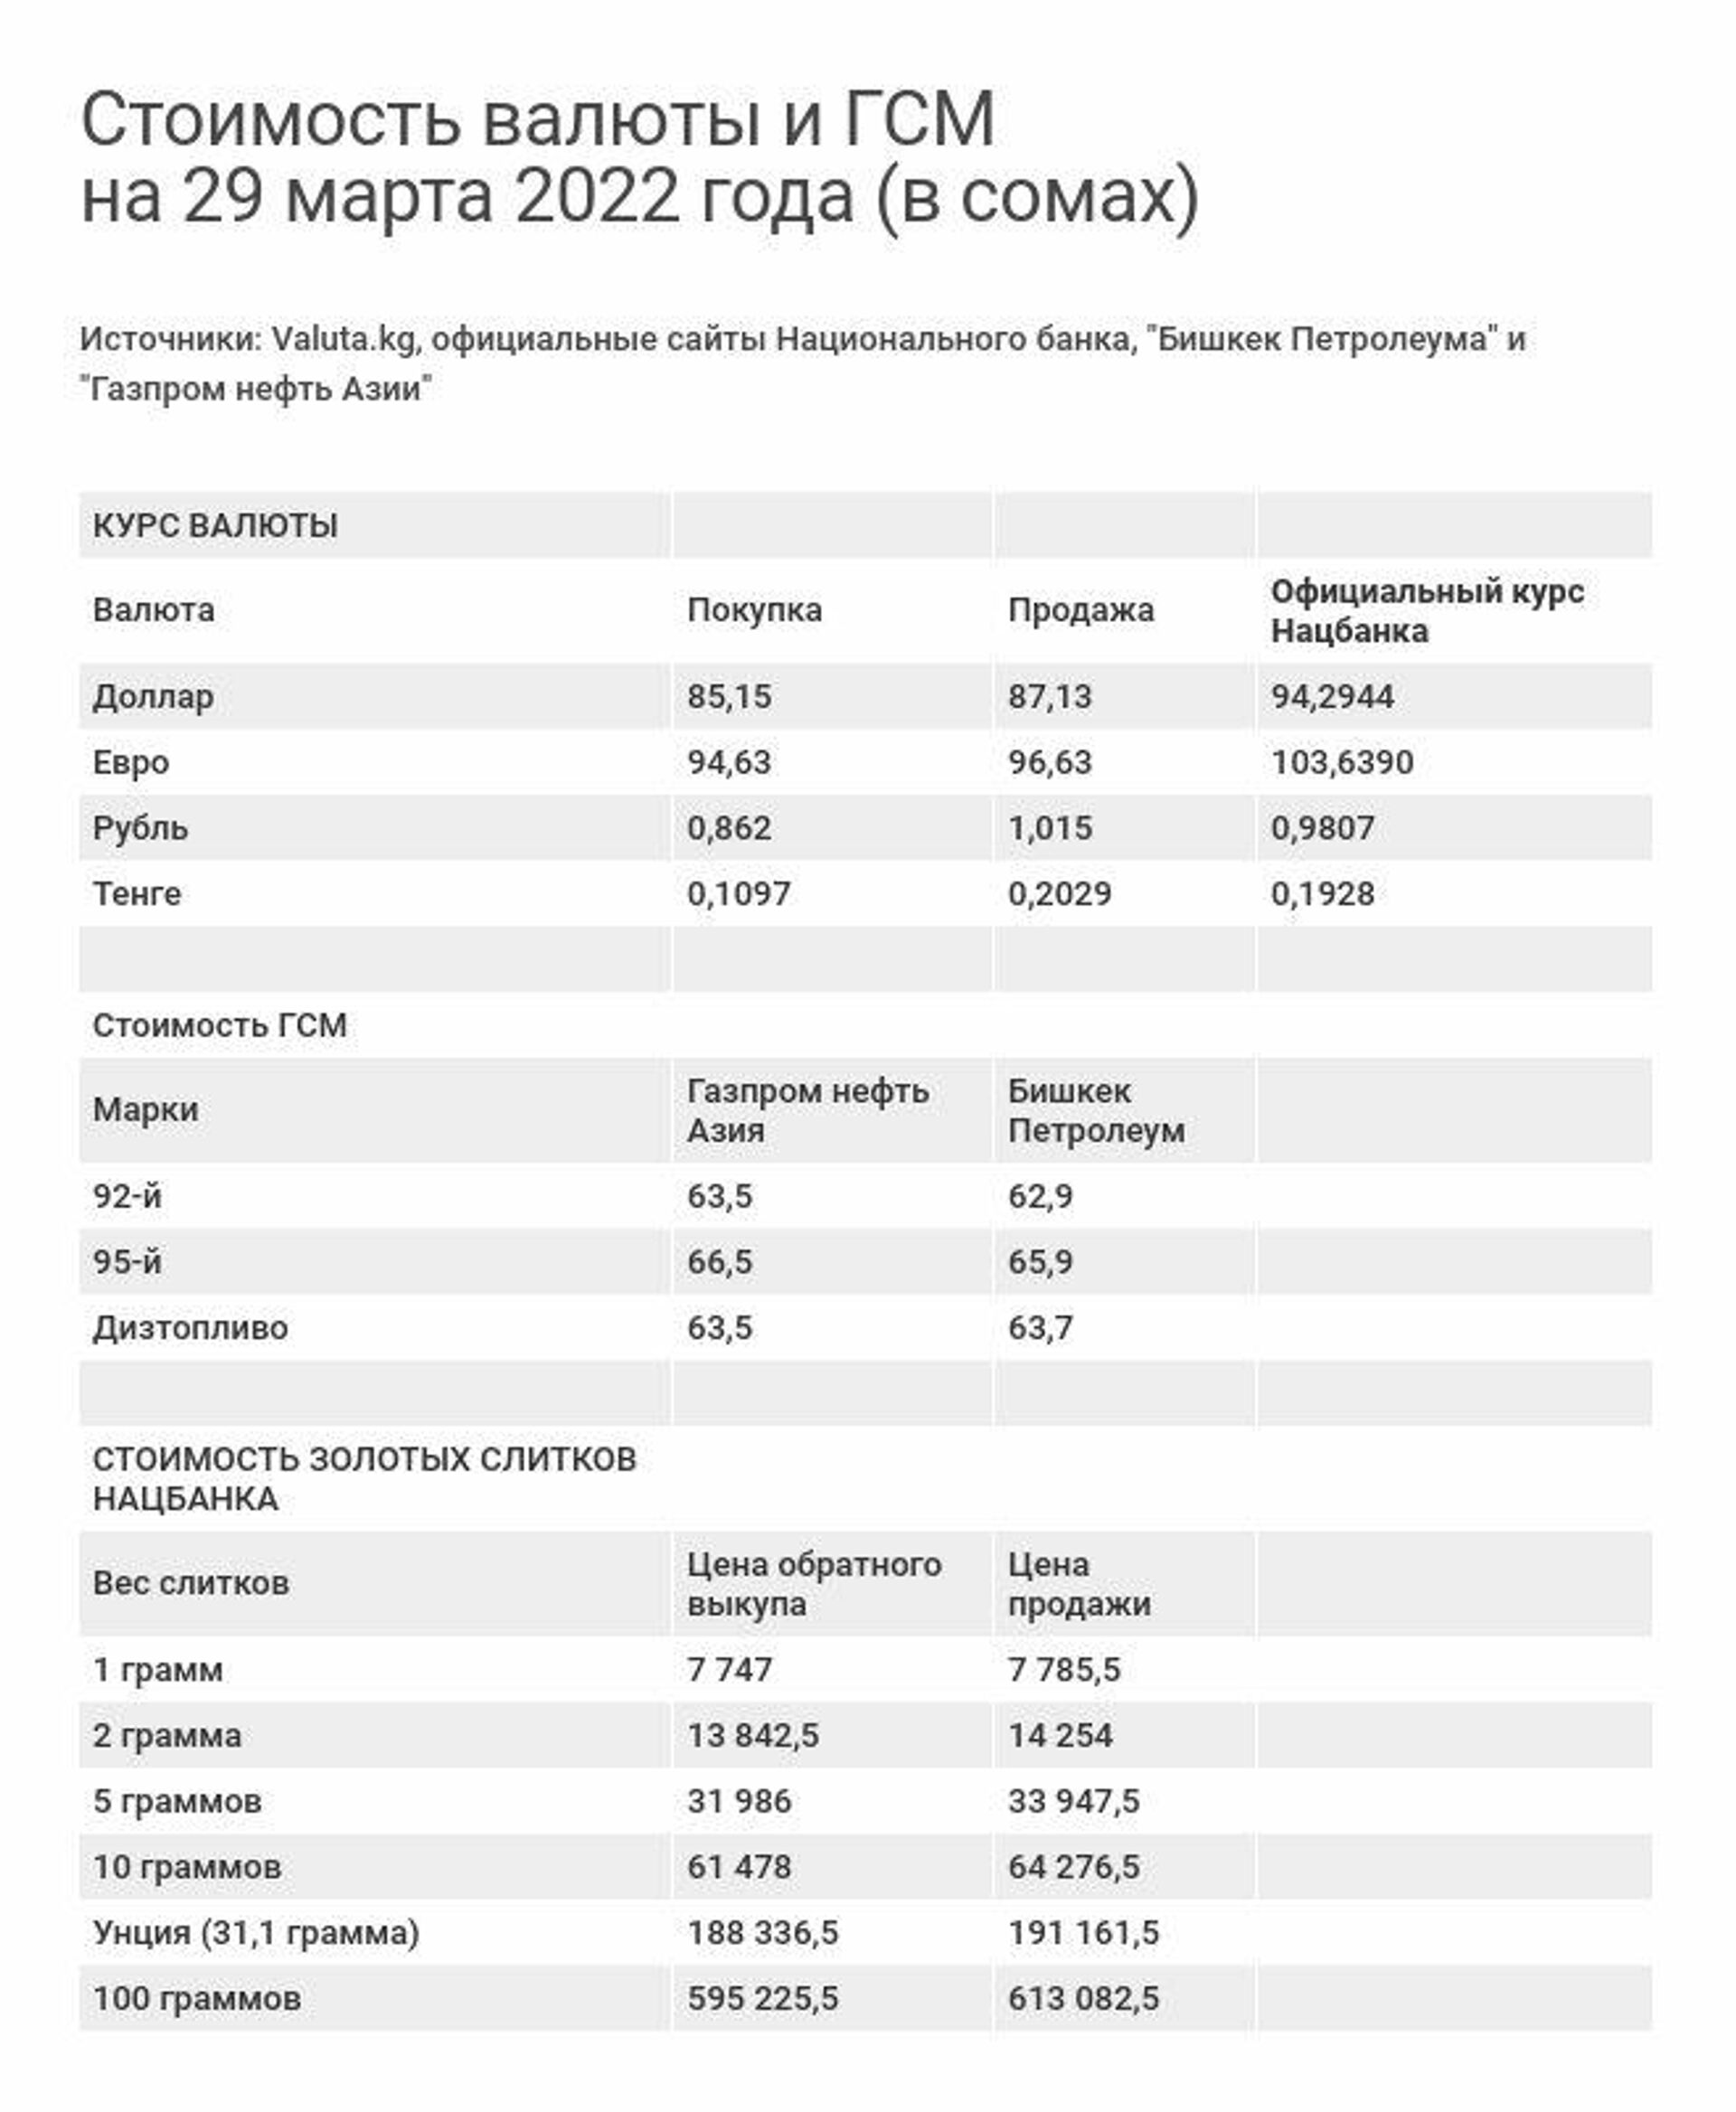 Стоимость валюты и ГСМ на 29 марта 2022 года - Sputnik Кыргызстан, 1920, 29.03.2022